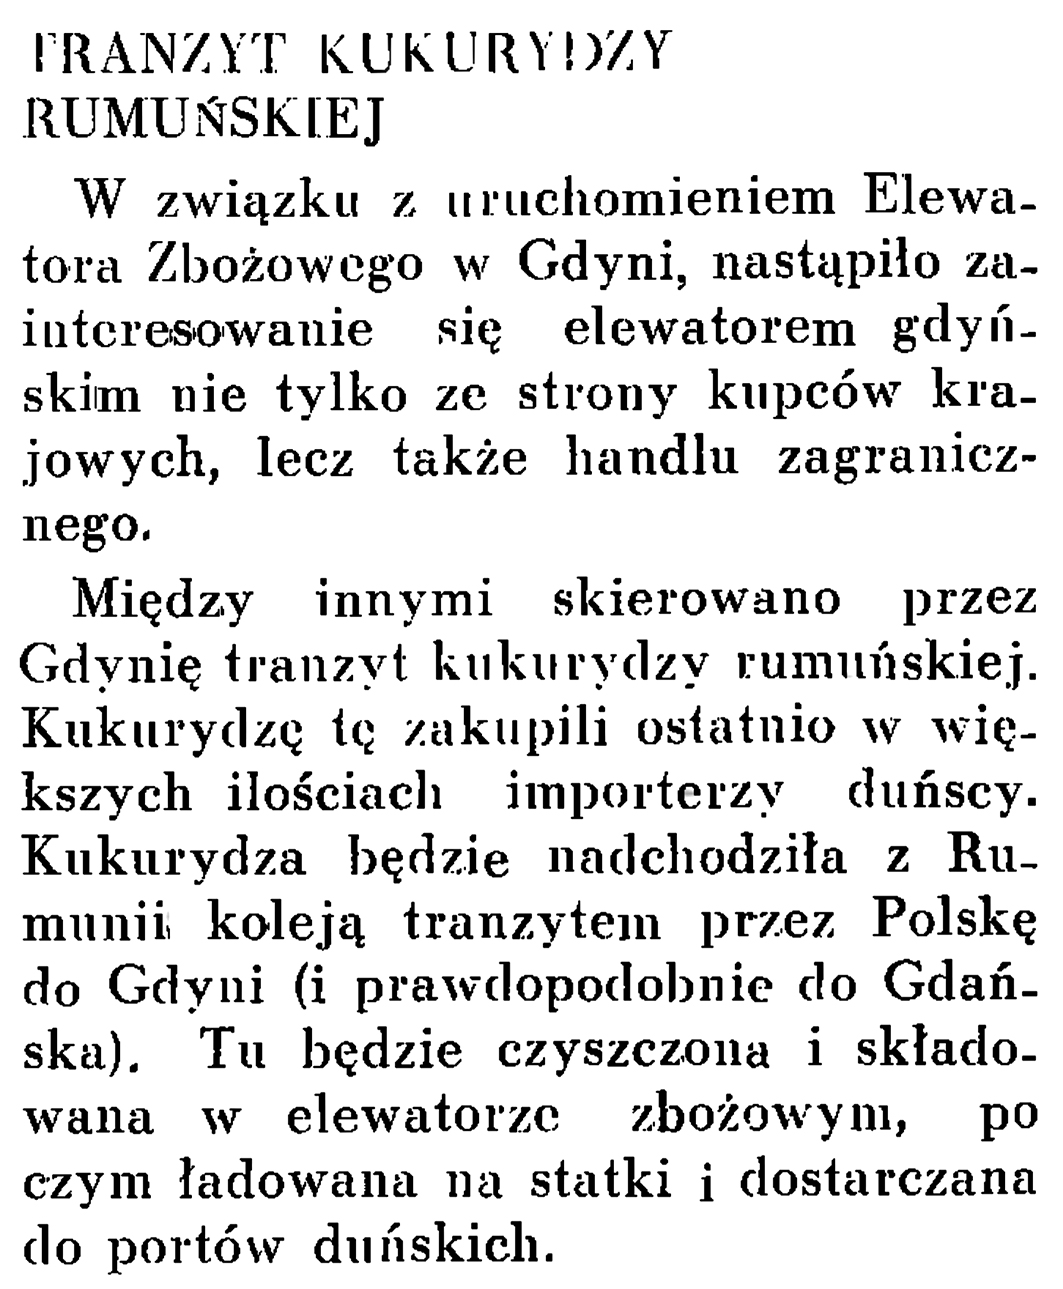 Tranzyt kukurydzy rumuńskiej // Wiadomości Portu Gdyńskiego. - 1937, nr 12, s. 18